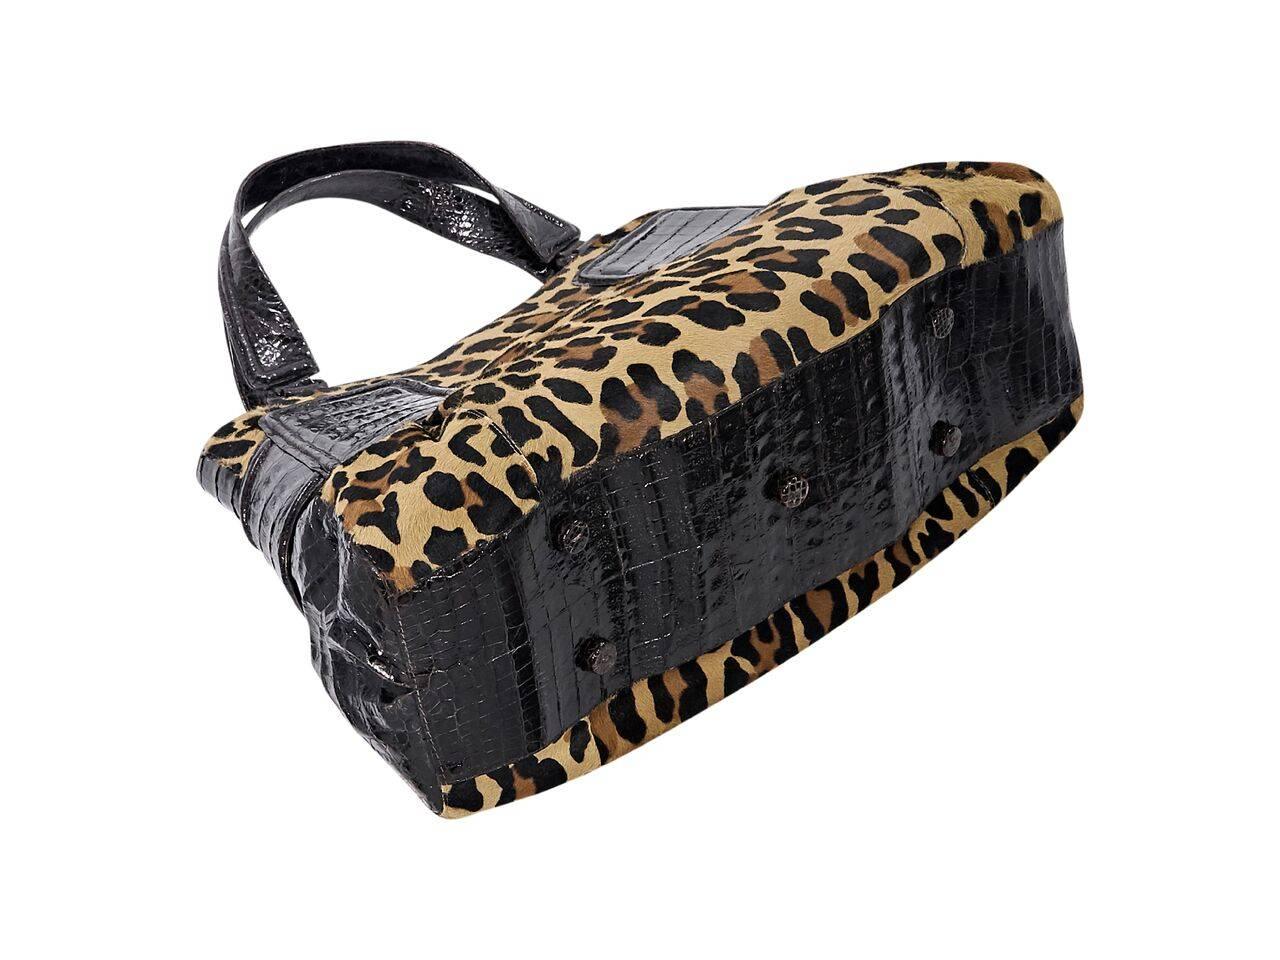 Black Nancy Gonzalez Multicolor Leopard-Print Tote Bag